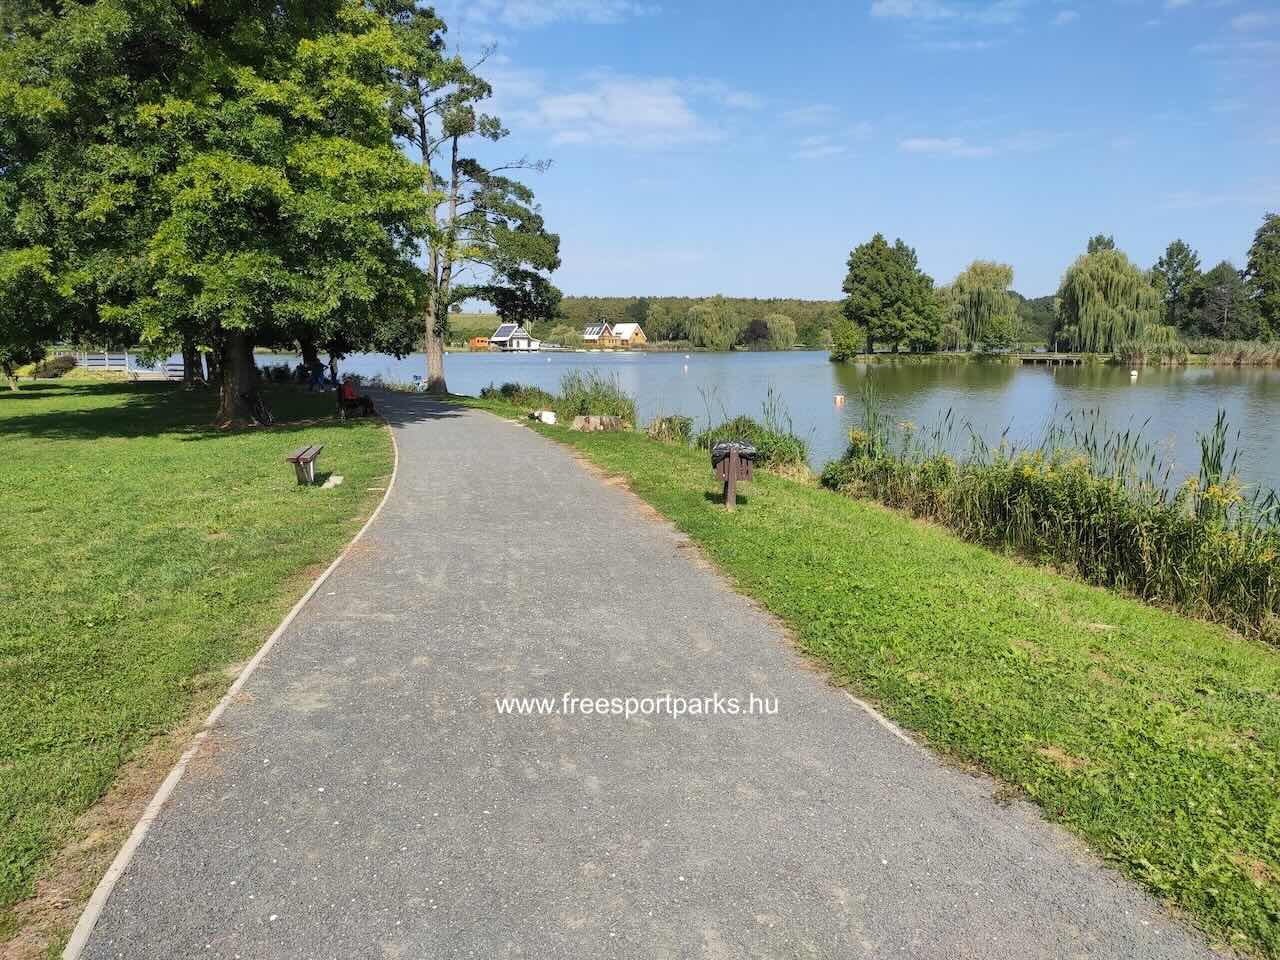 közös sétány gyalogosoknak, kerékpárosoknak, futóknak, Csónakázó-tó partján, Nagykanizsa - Free Sport Parks Térkép